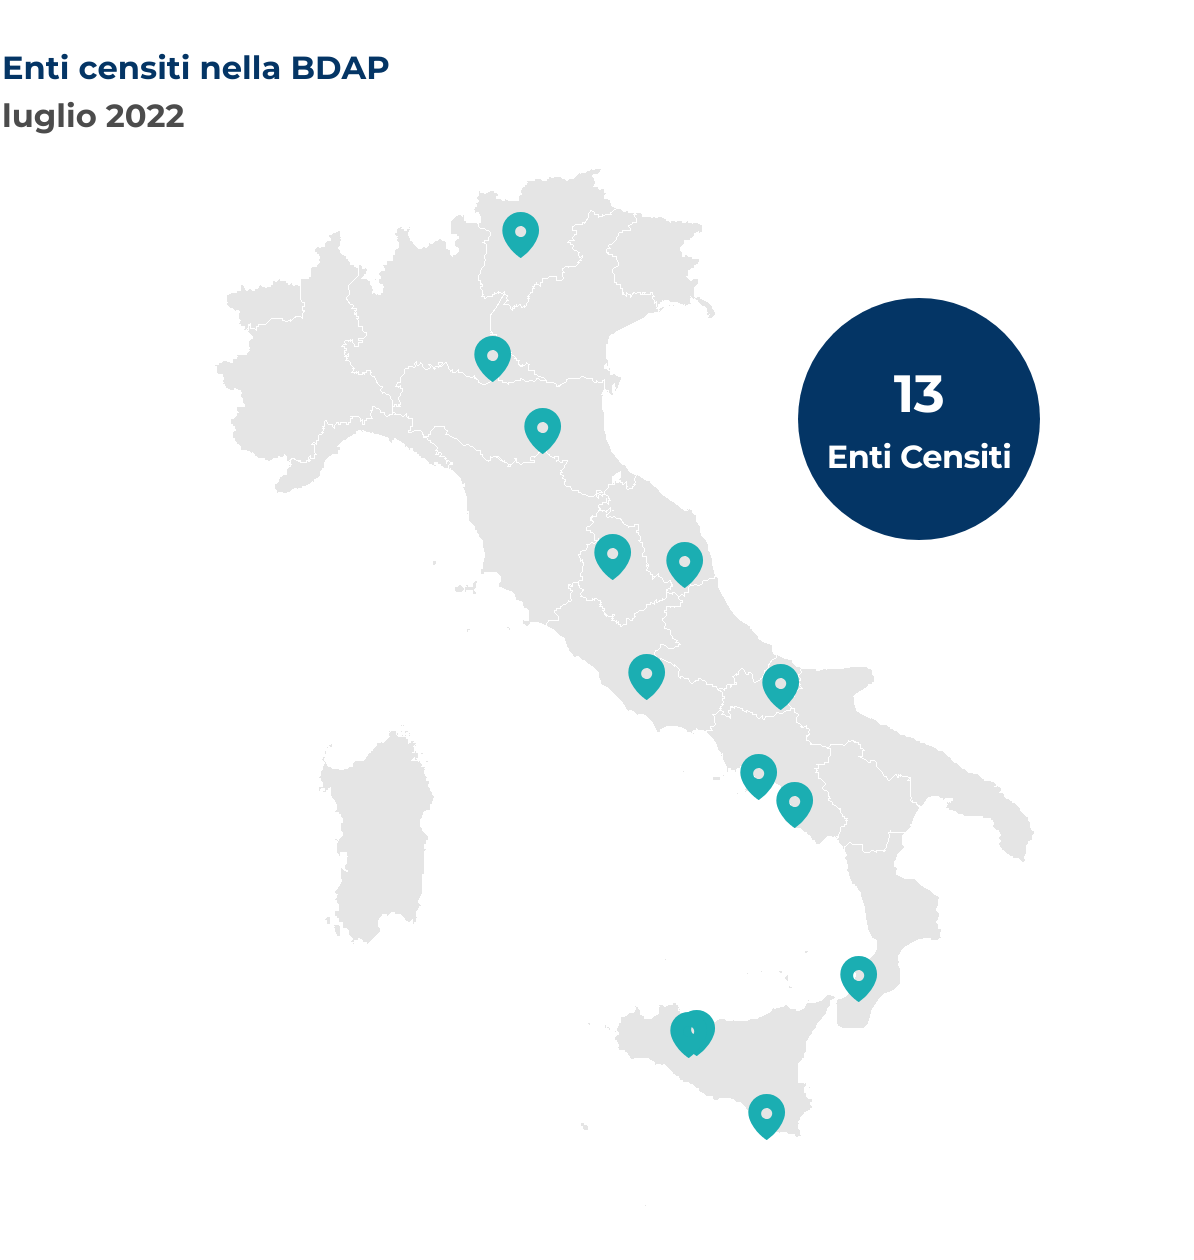 Mappa dellâ€™Italia che mostra la localizzazione per Comune degli enti censiti nella BDAP nel mese di luglio 2022.